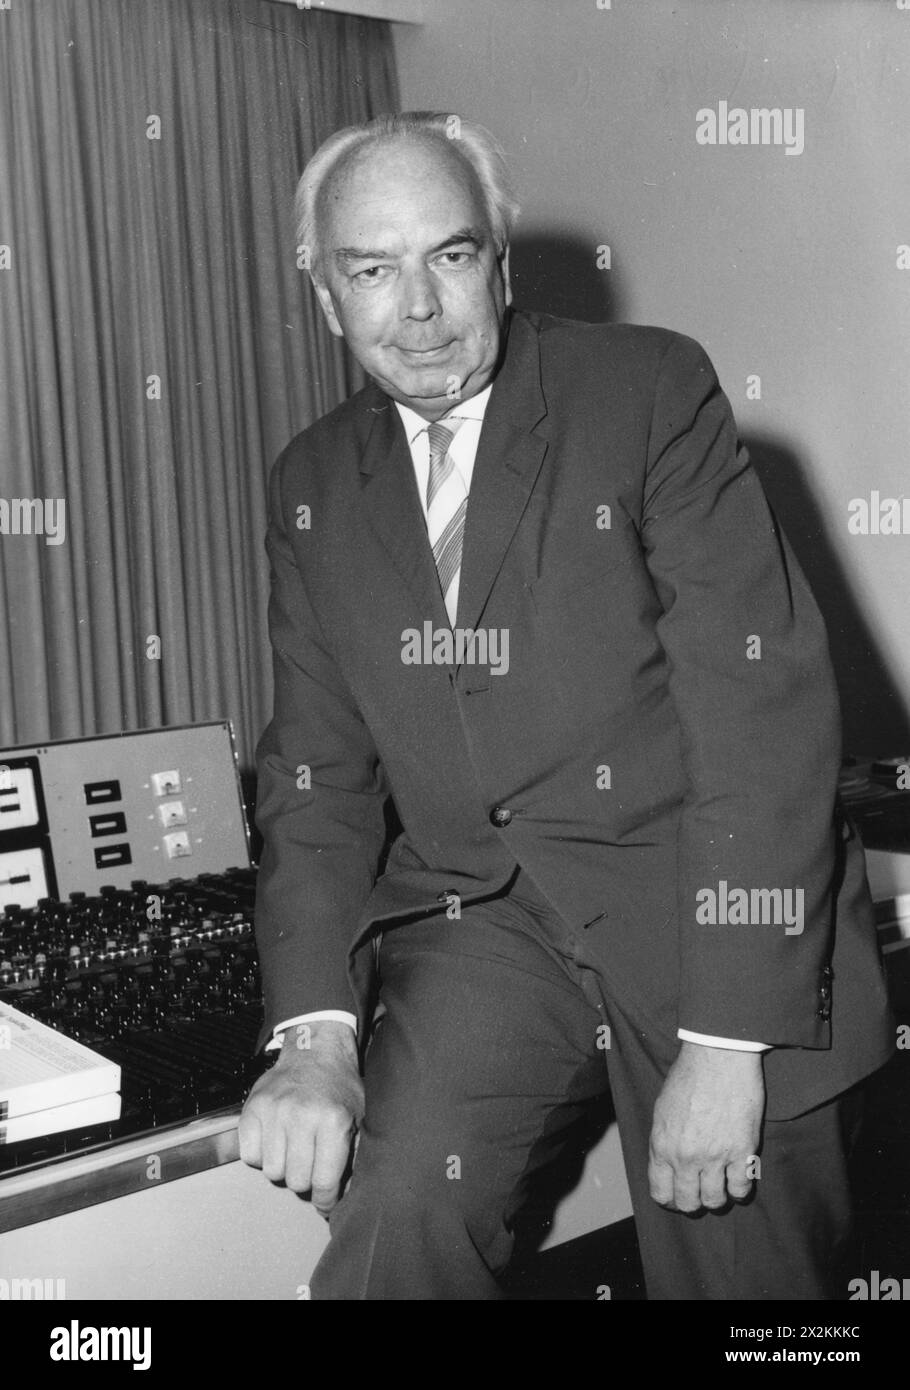 Slavik, Gerhard, président de la German Phono Academy, aux studios d'enregistrement de Hambourg, années 1960, ADDITIONAL-RIGHTS-LEARANCE-INFO-NOT-AVAILABLE Banque D'Images